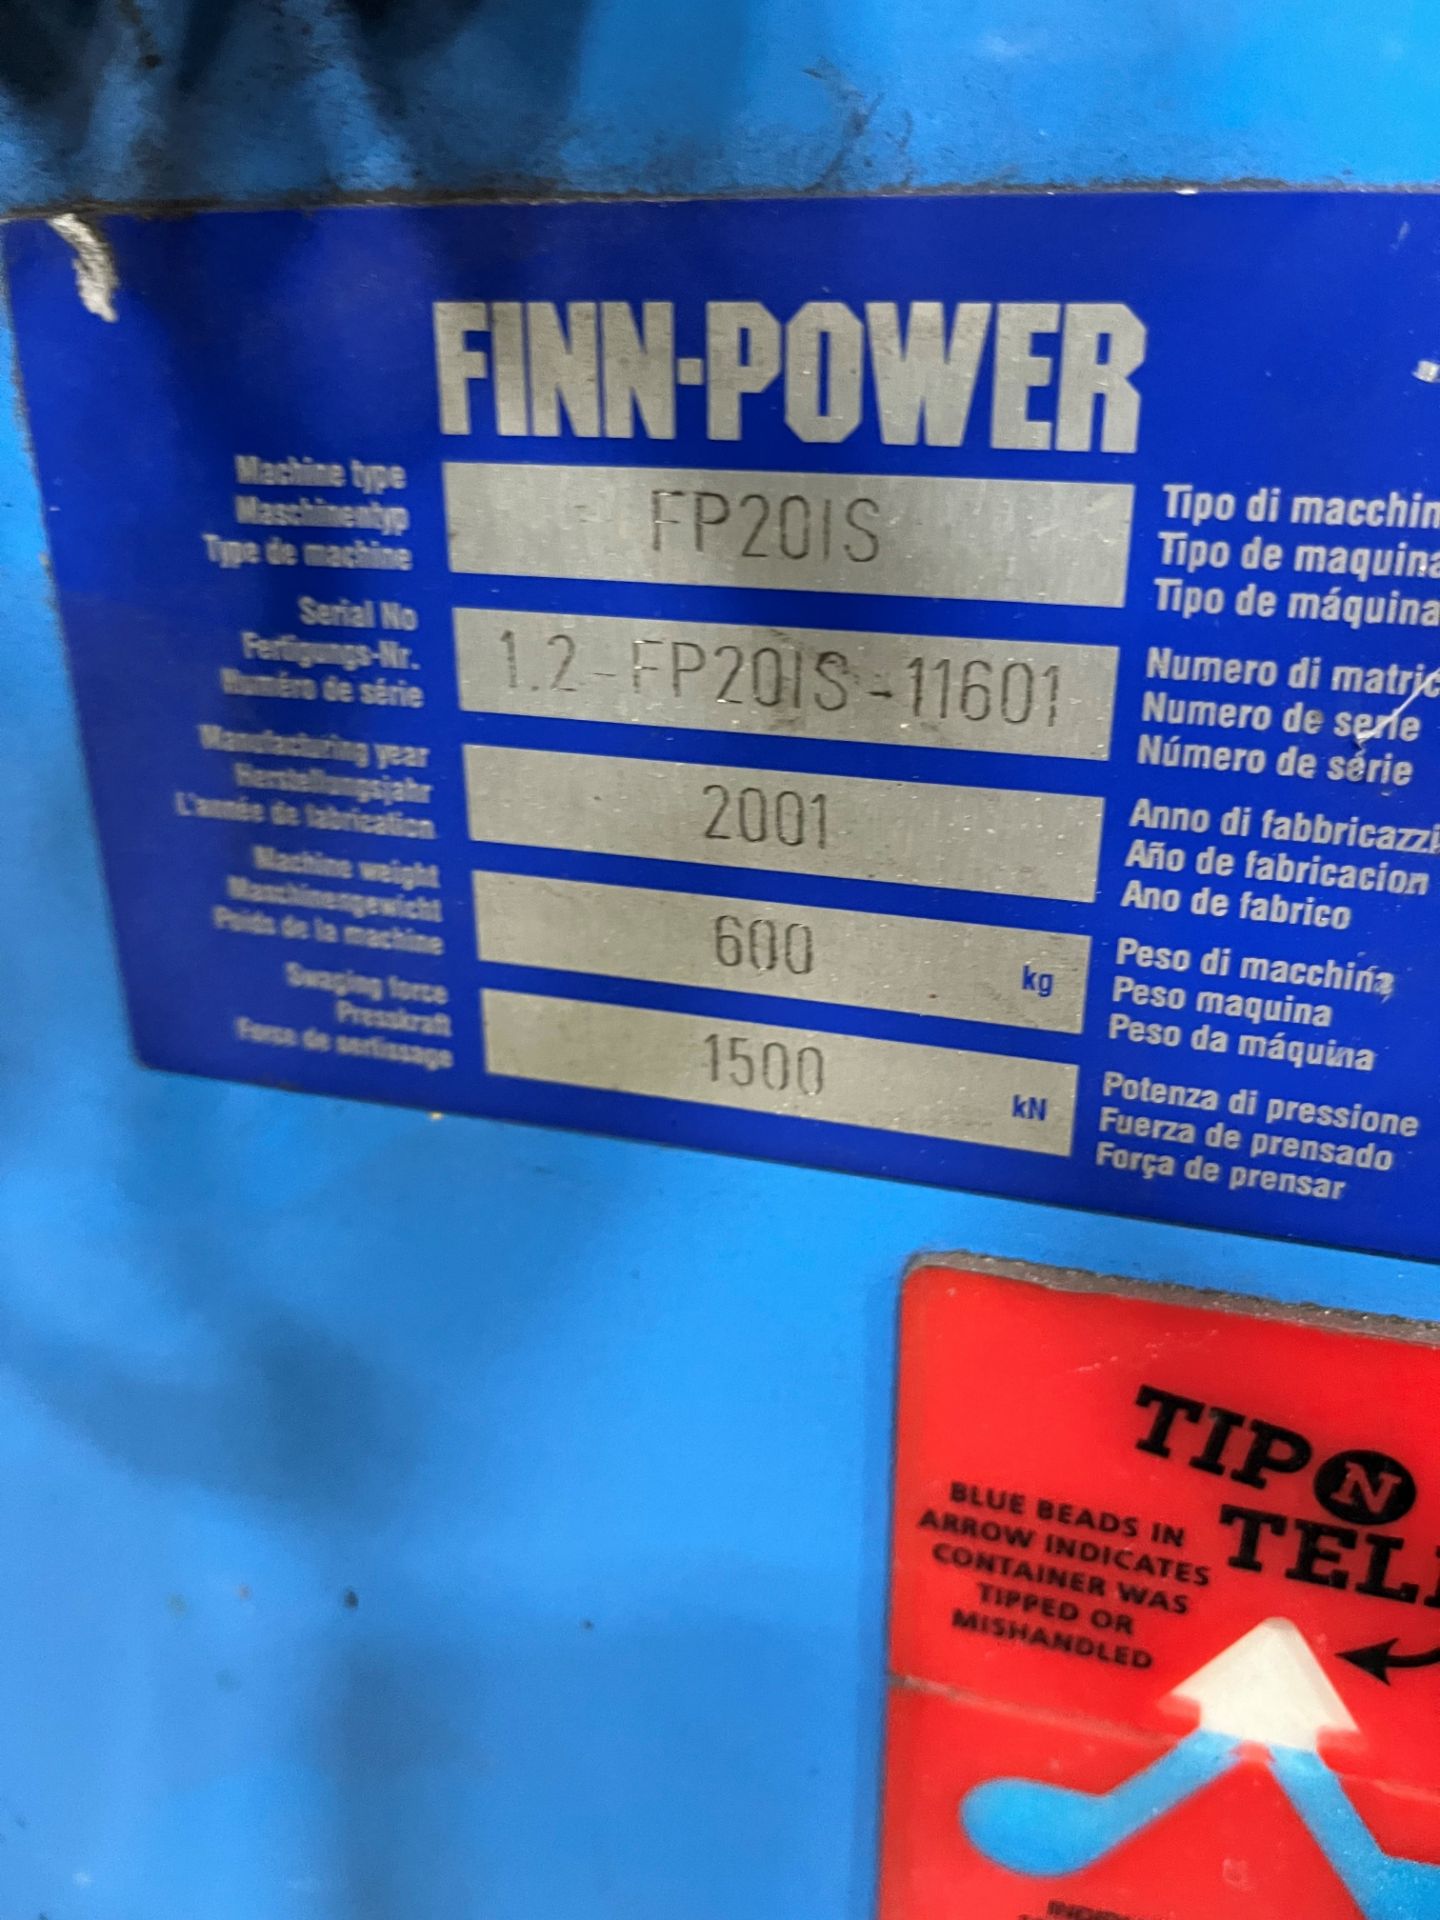 Finn Power model FP201S hose crimper - Image 4 of 5